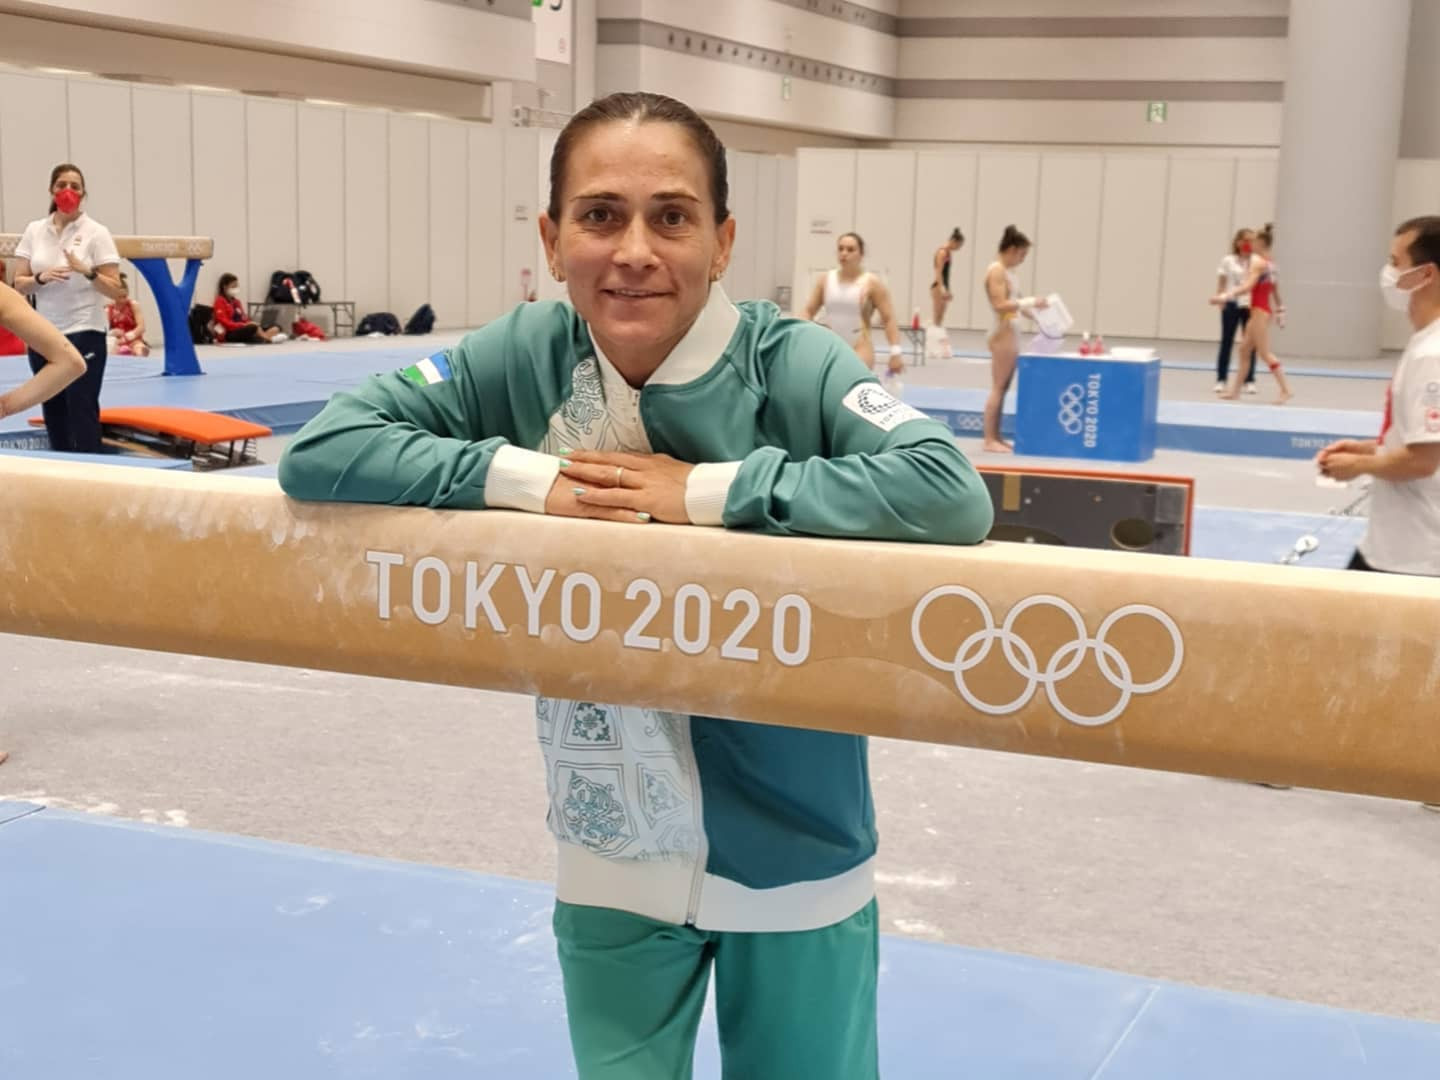 Chusovitina planeja nona participação olímpica em Paris-2024